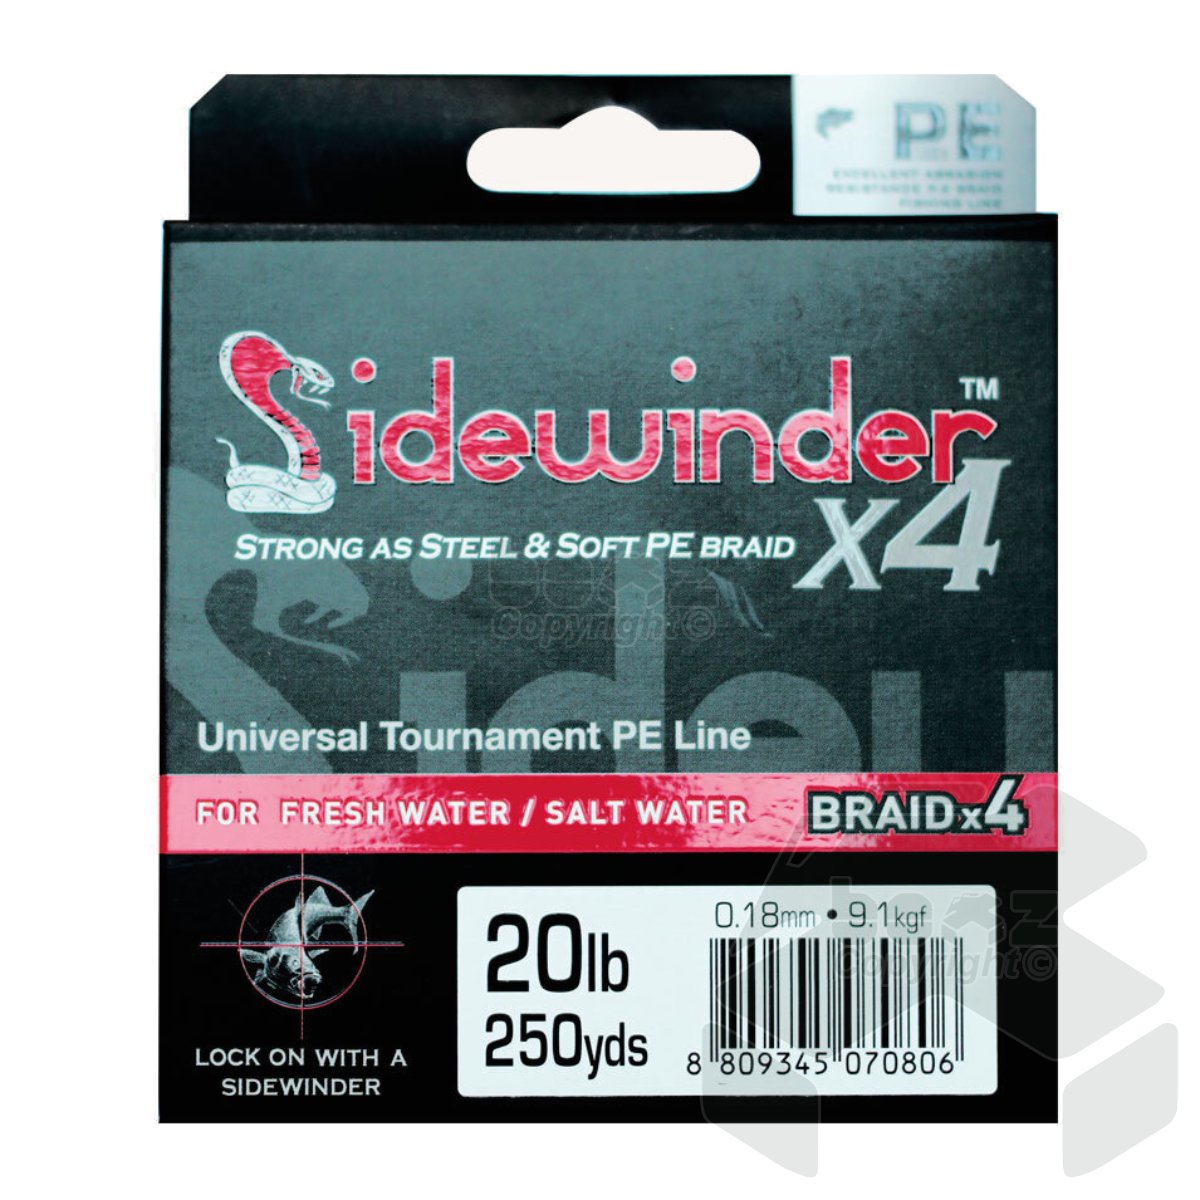 Sidewinder 4X Silk Braid